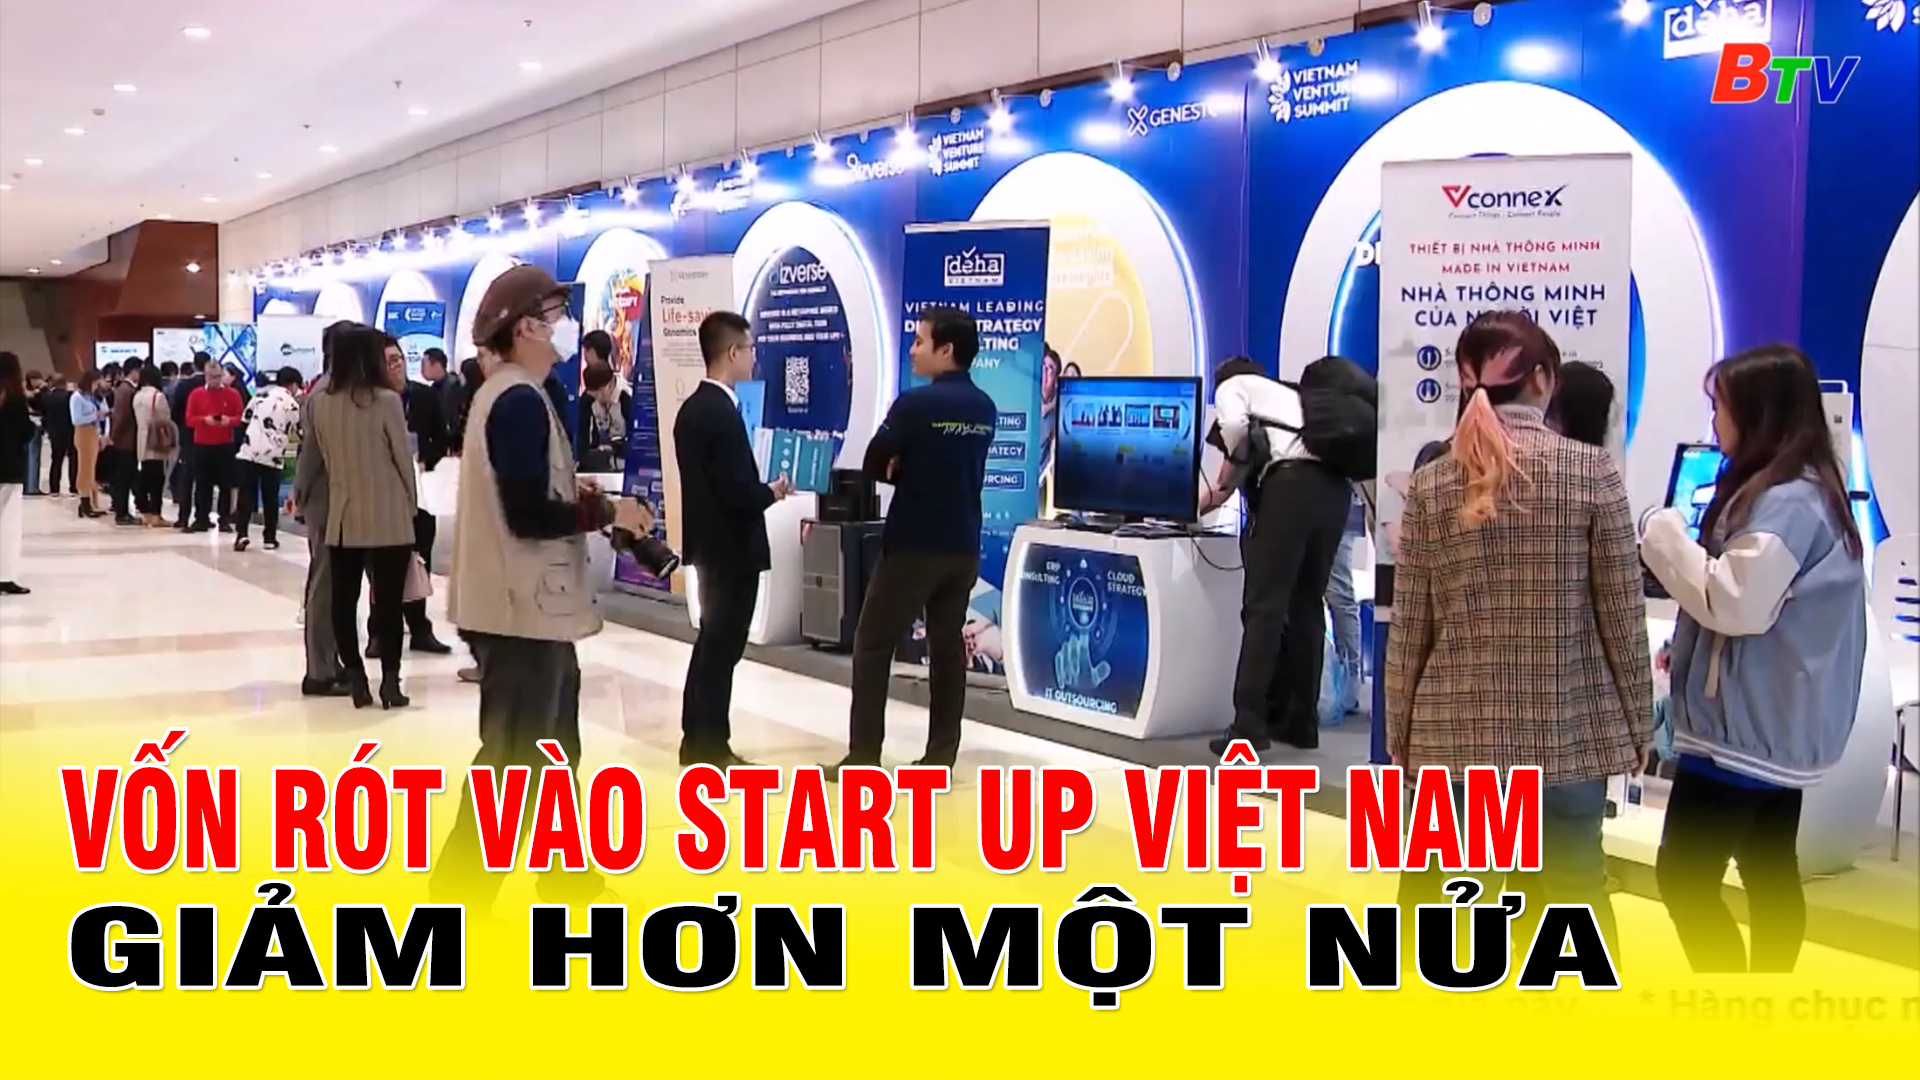 Vốn rót vào start up Việt Nam giảm hơn một nửa